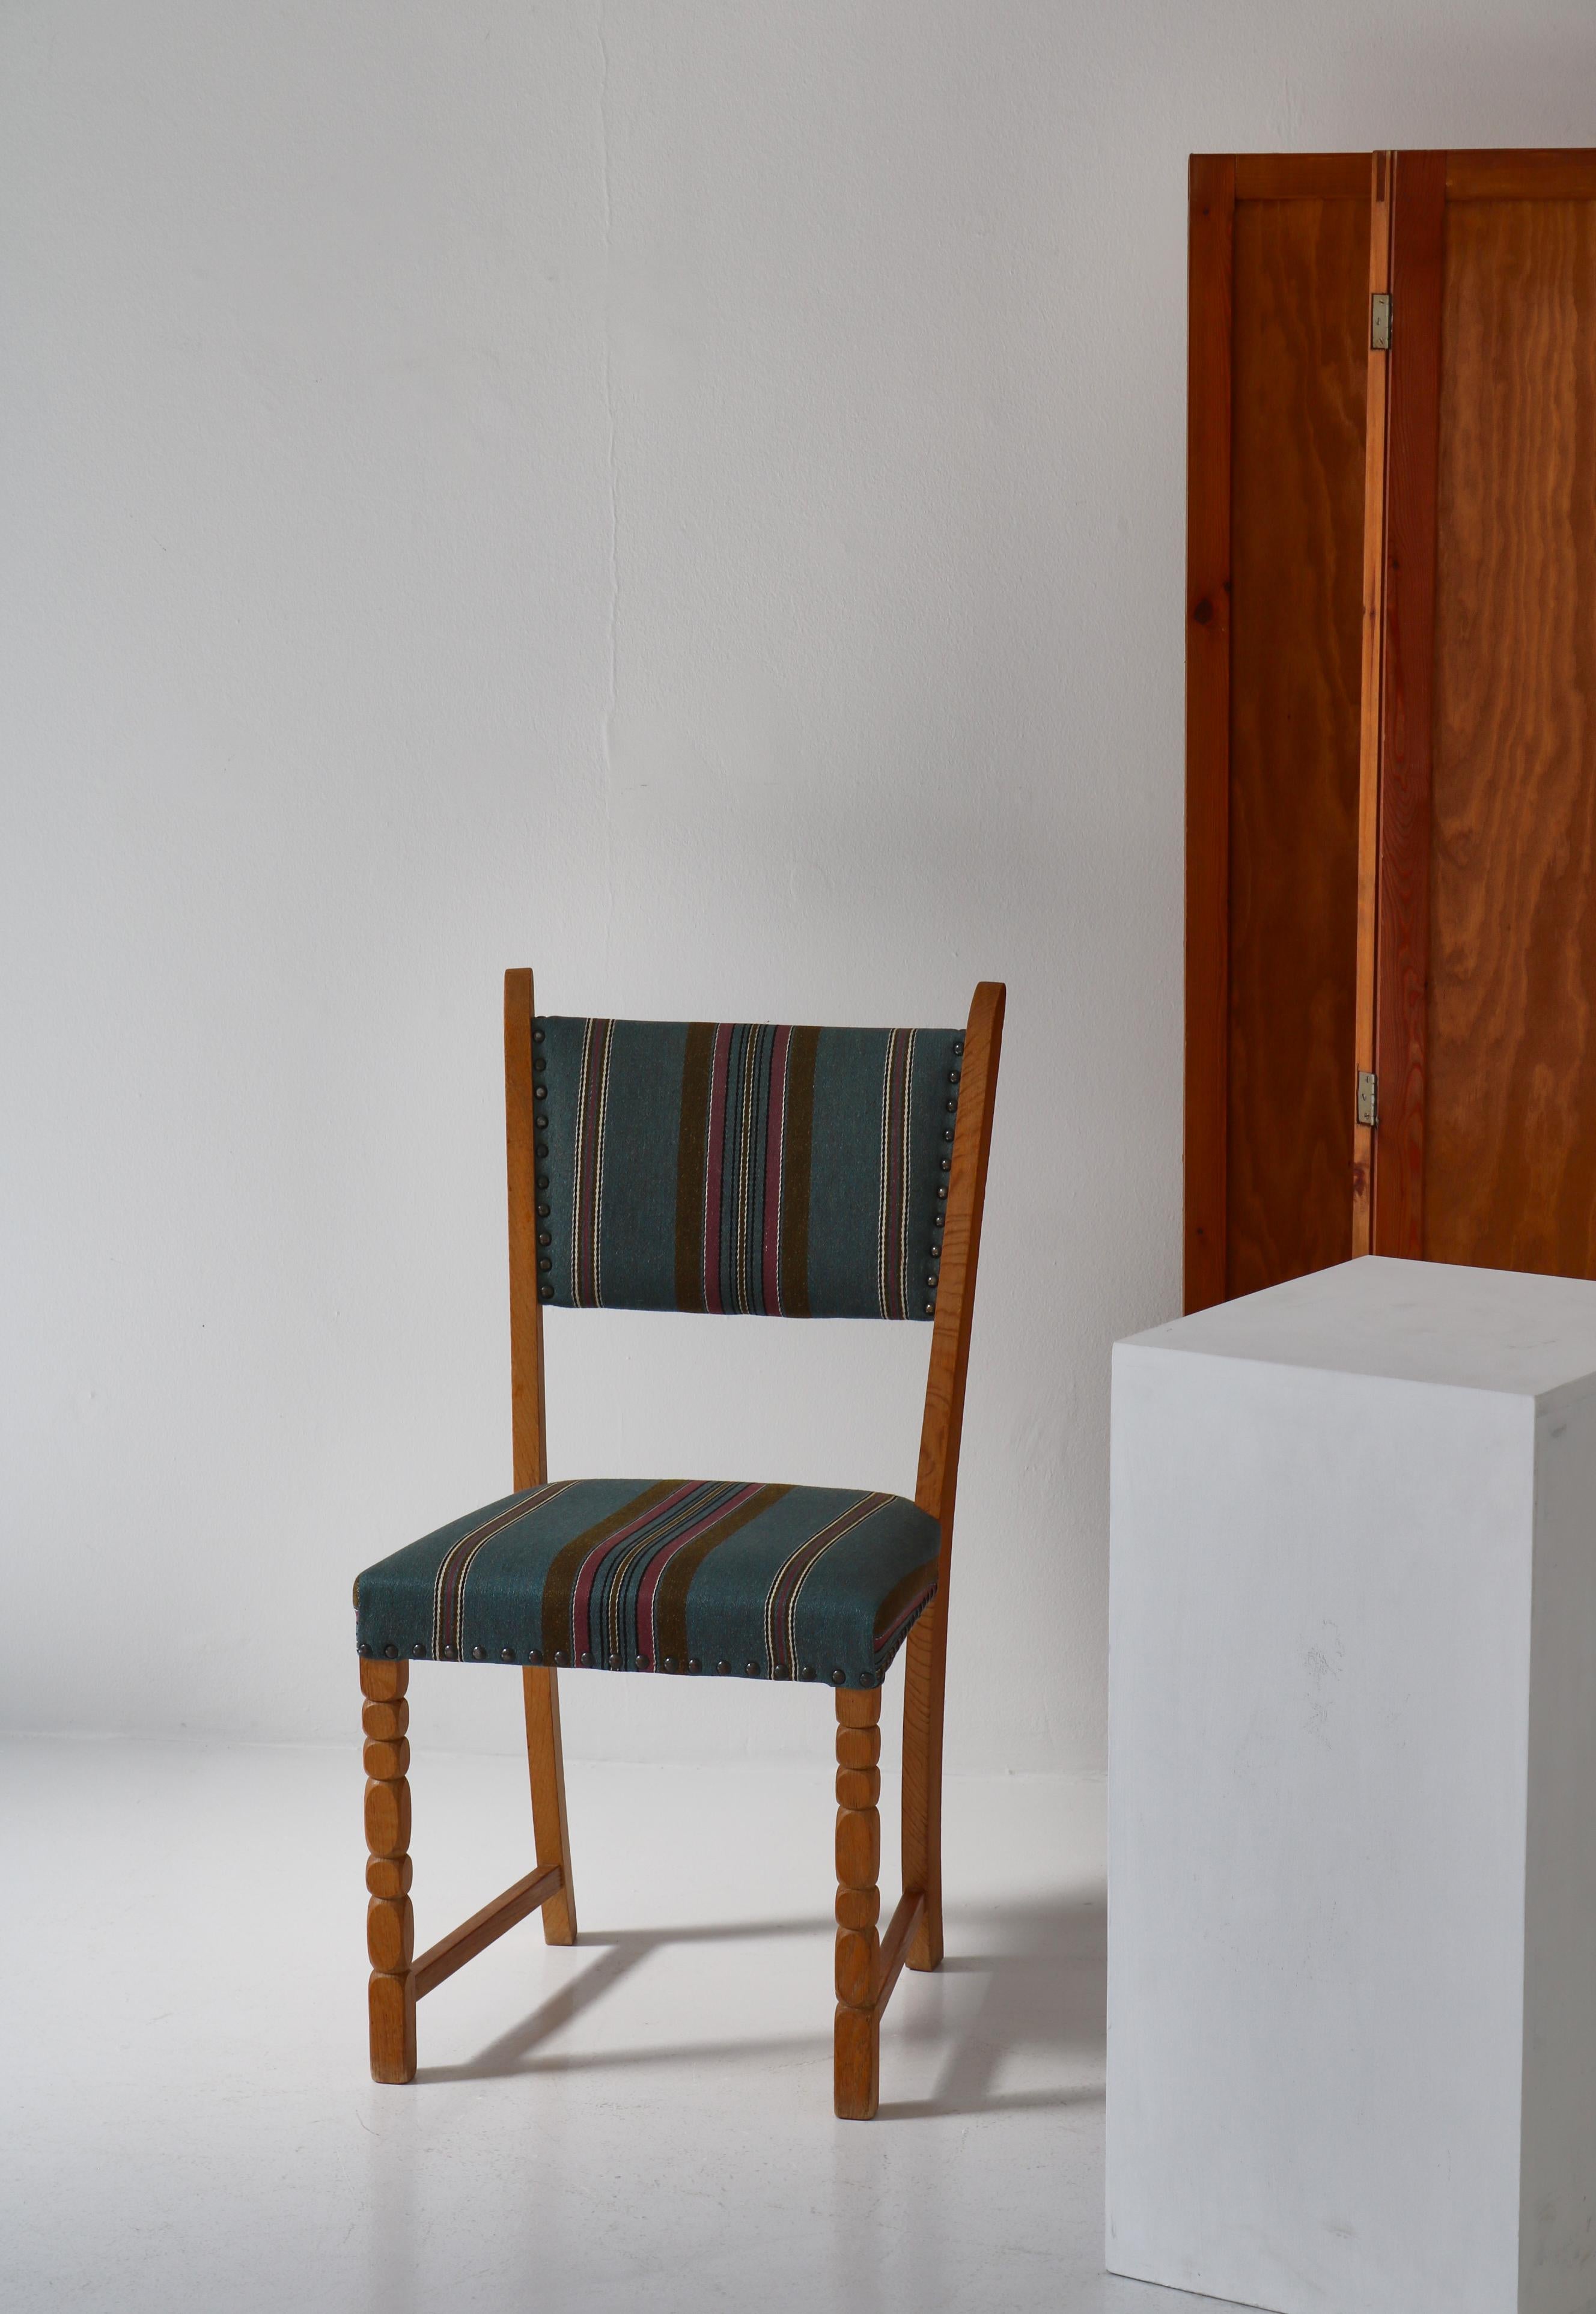 Scandinavian Modern 1960s Side Chair in Oak & Wool Fabric by Henry Kjærnulf, Danish Modern For Sale